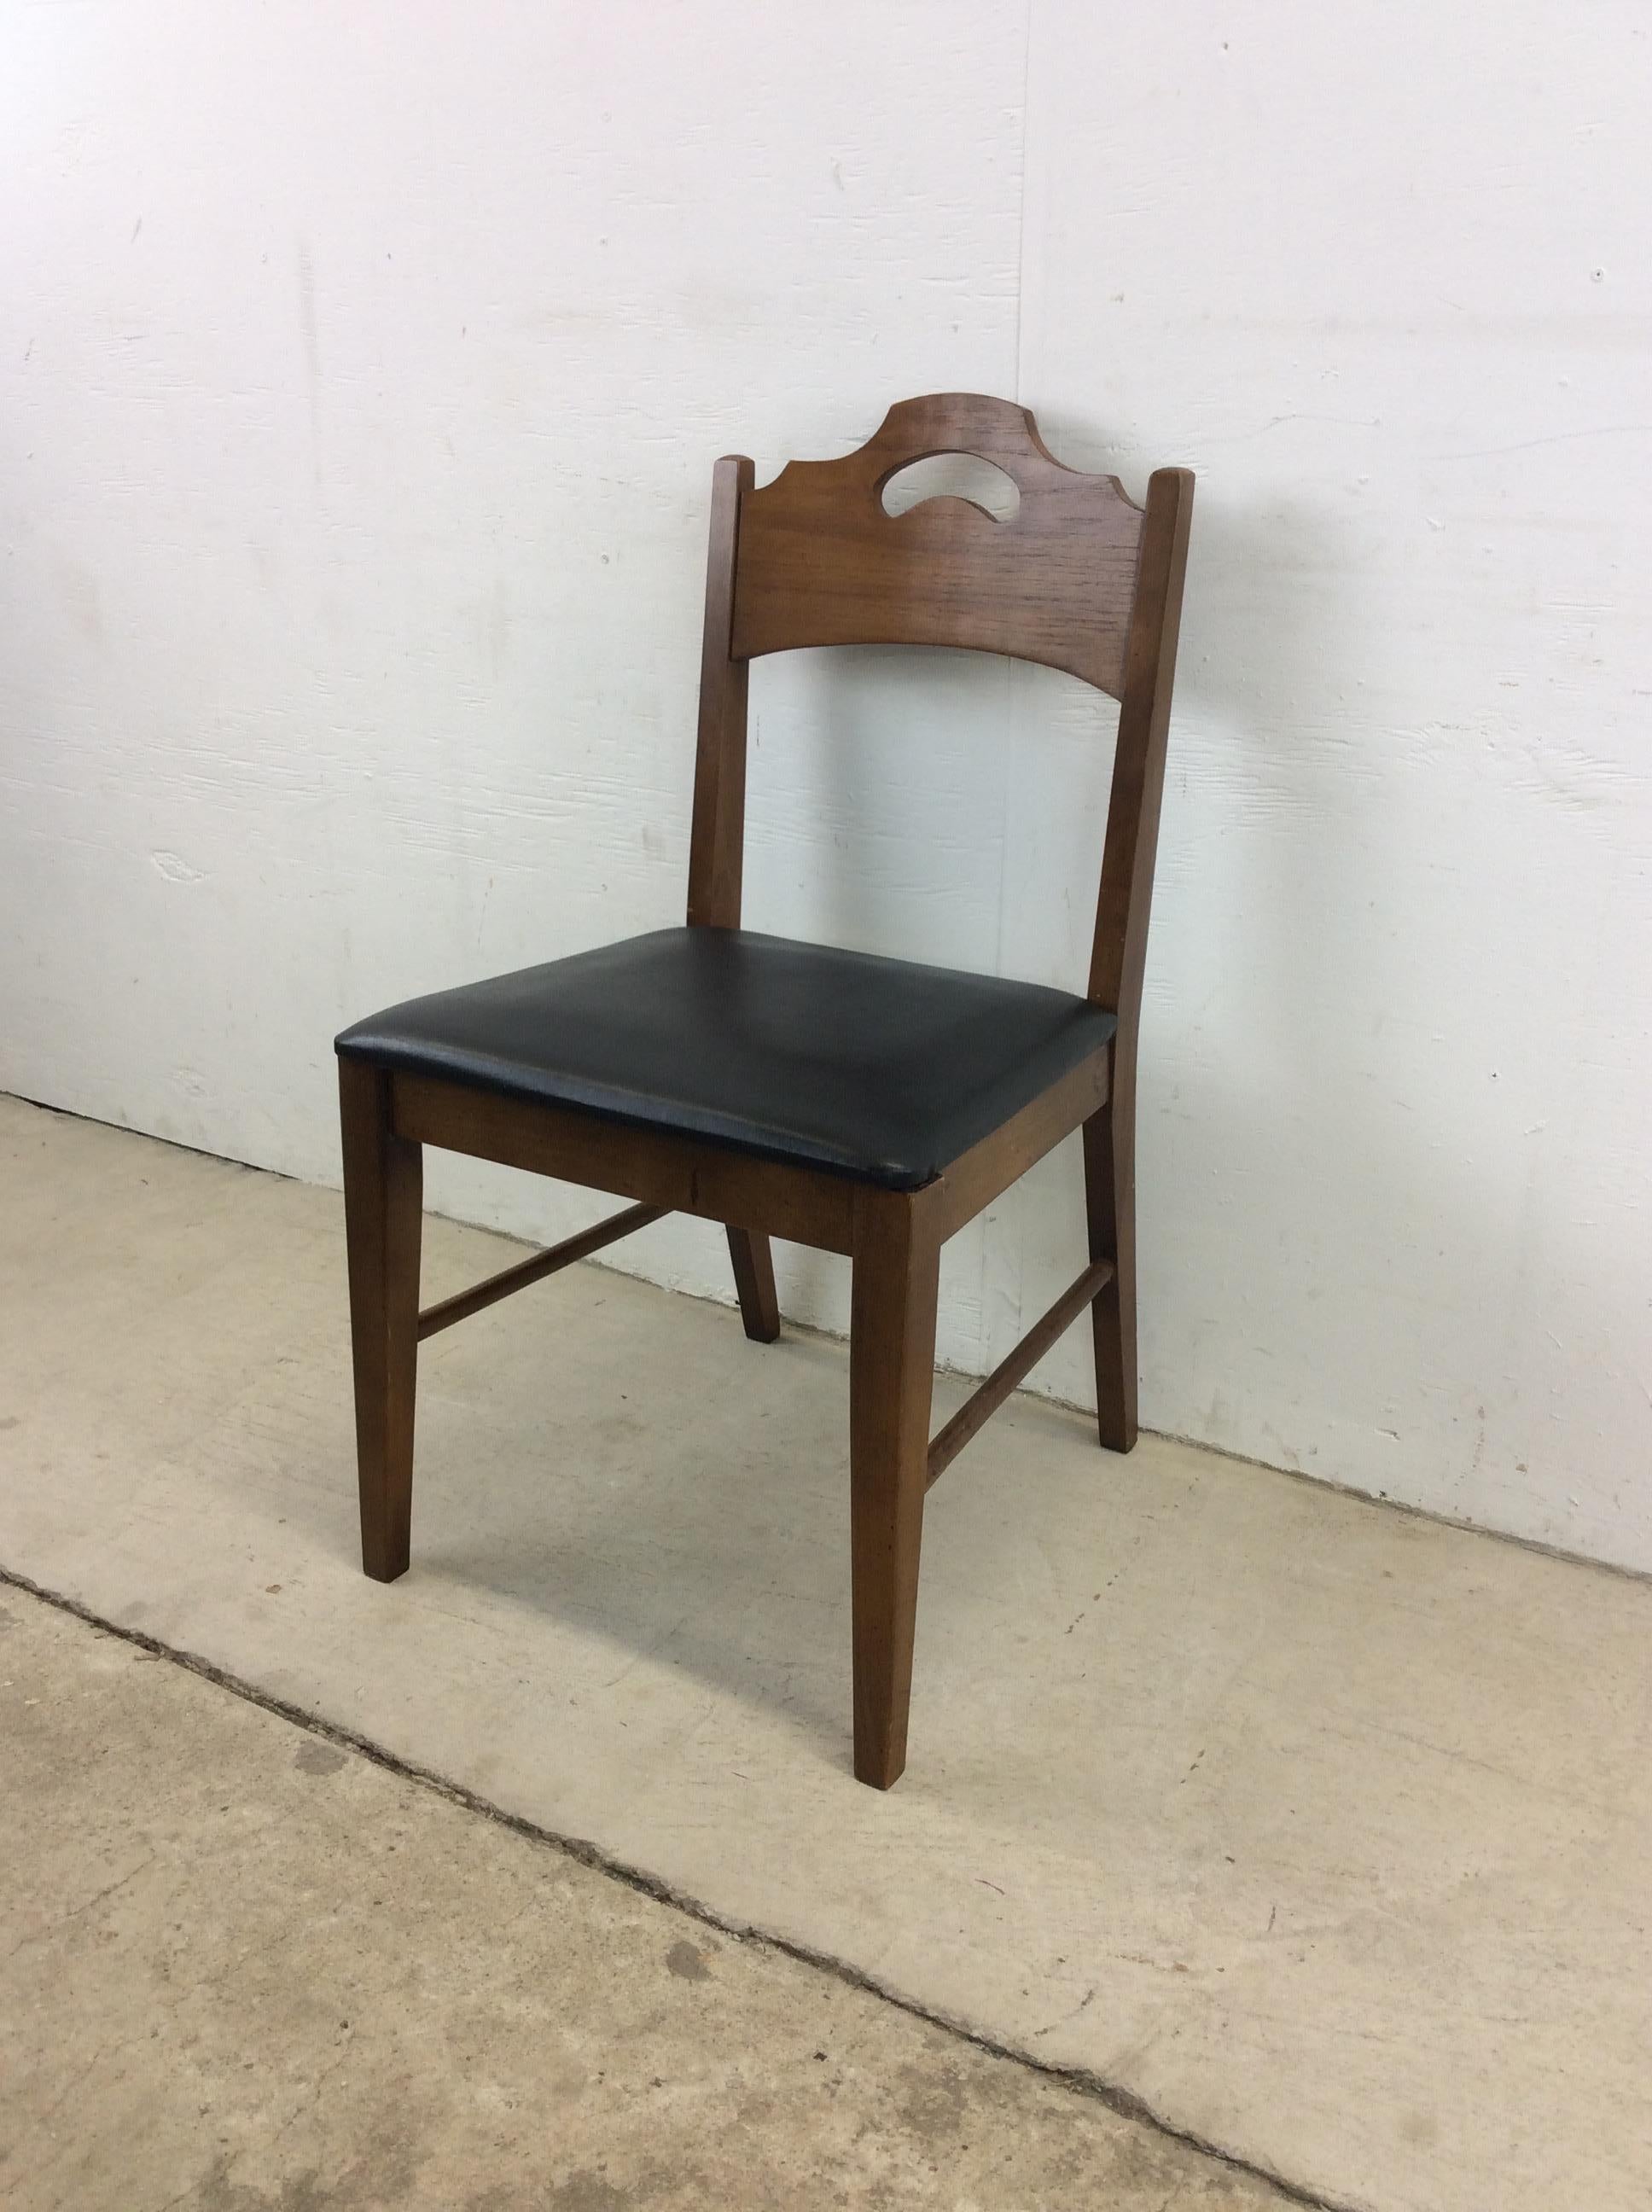 Dieser moderne Beistellstuhl aus der Mitte des Jahrhunderts zeichnet sich durch eine Hartholzkonstruktion, ein originales Walnussholz-Finish, einen mit schwarzem Vintage-Vinyl gepolsterten Sitz und eine hölzerne Rückenlehne mit geschnitztem Griff